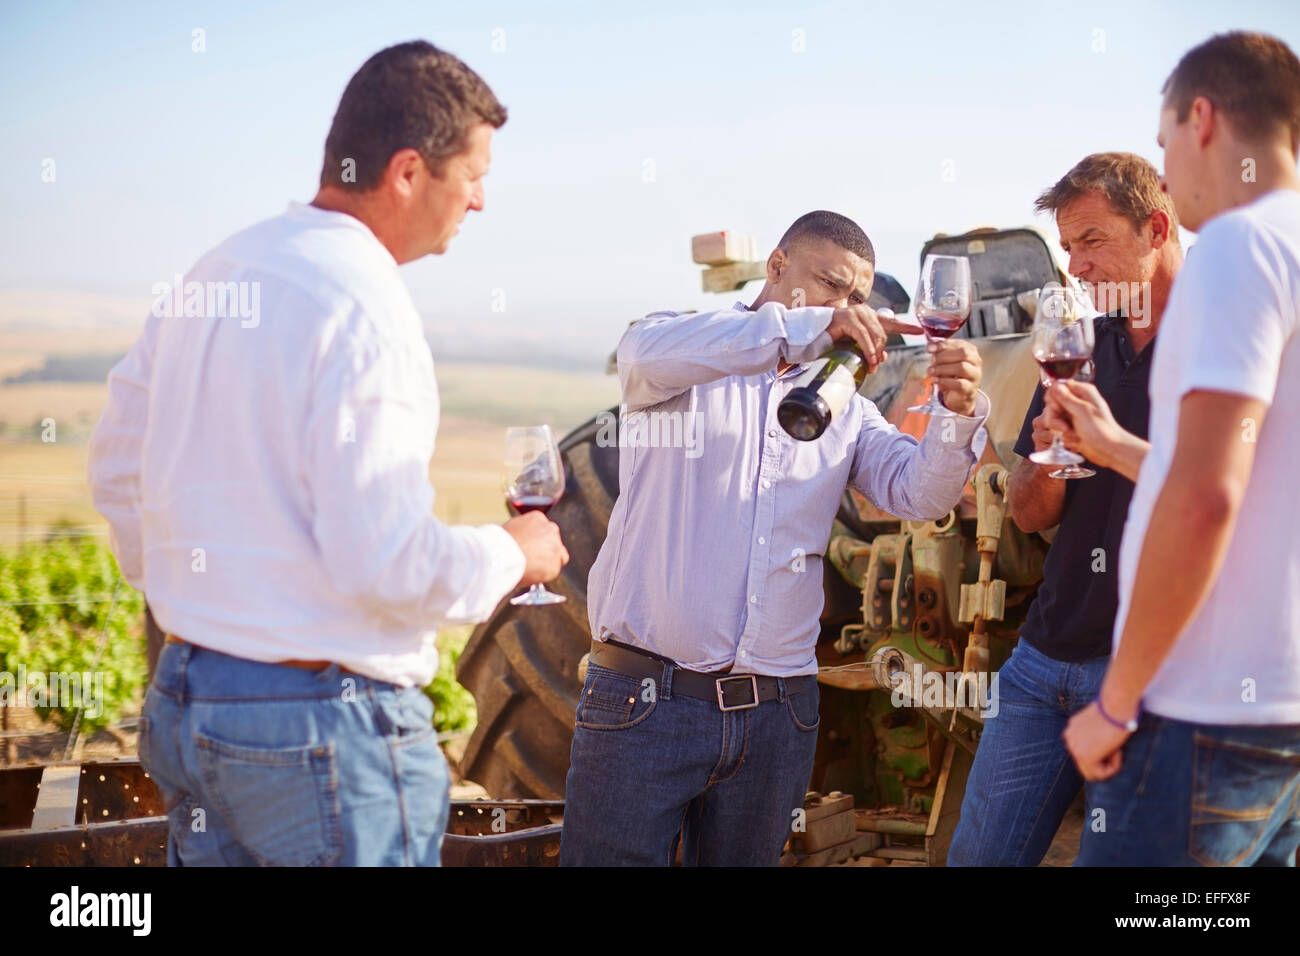 South Africa, Wine growers tasting wine in vinyard Stock Photo